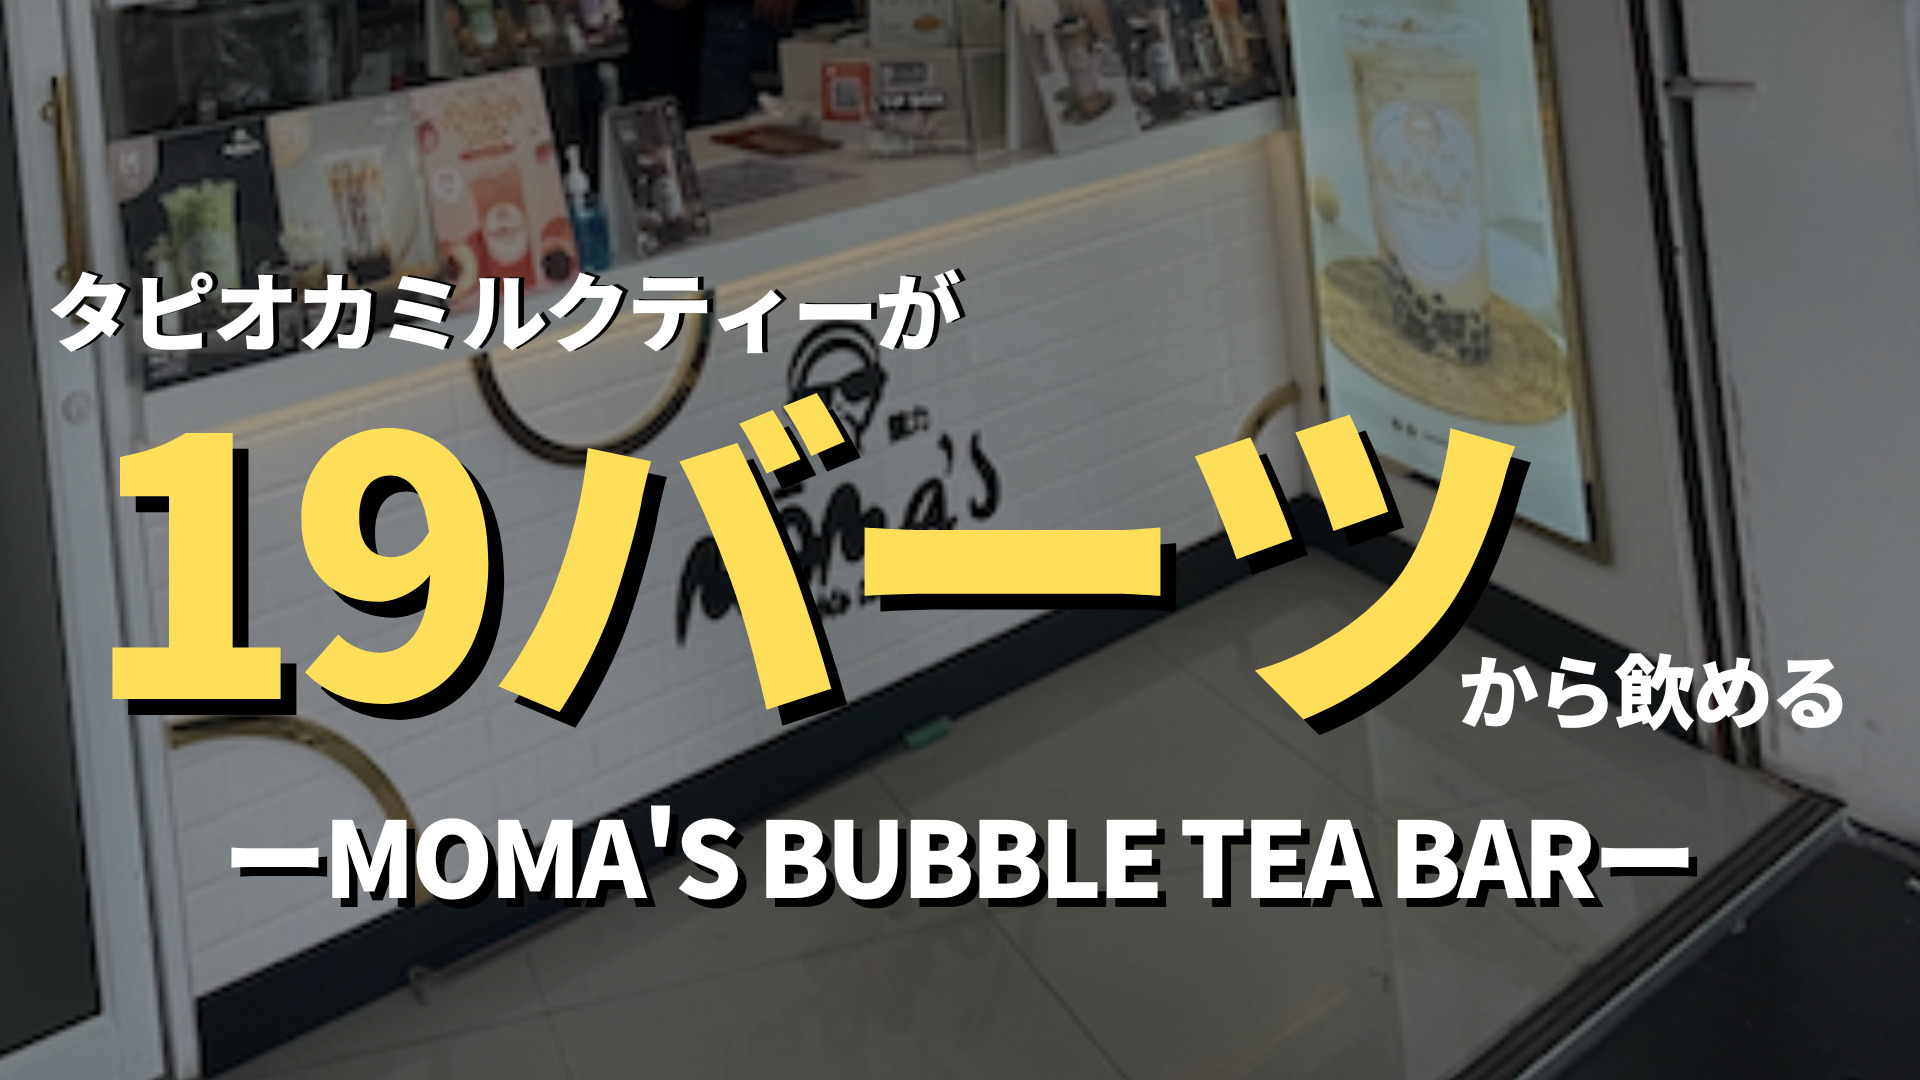 【トンロー】バンコクで一番安い⁉︎"能力"（Moma's bubble tea bar）なら19バーツでタピオカドリンクが飲める